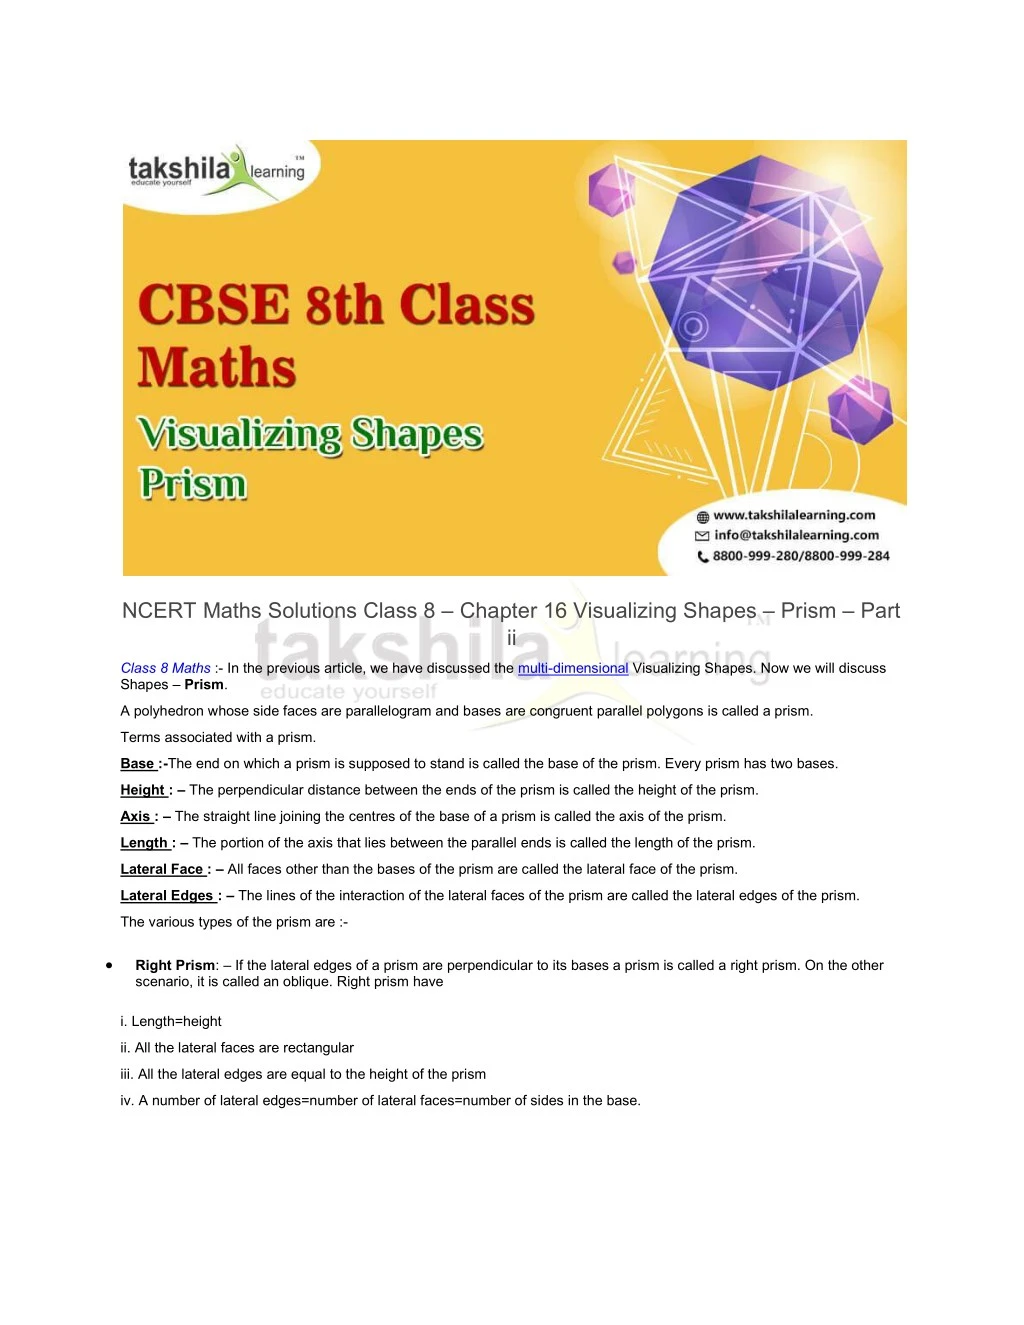 ncert maths solutions class 8 chapter